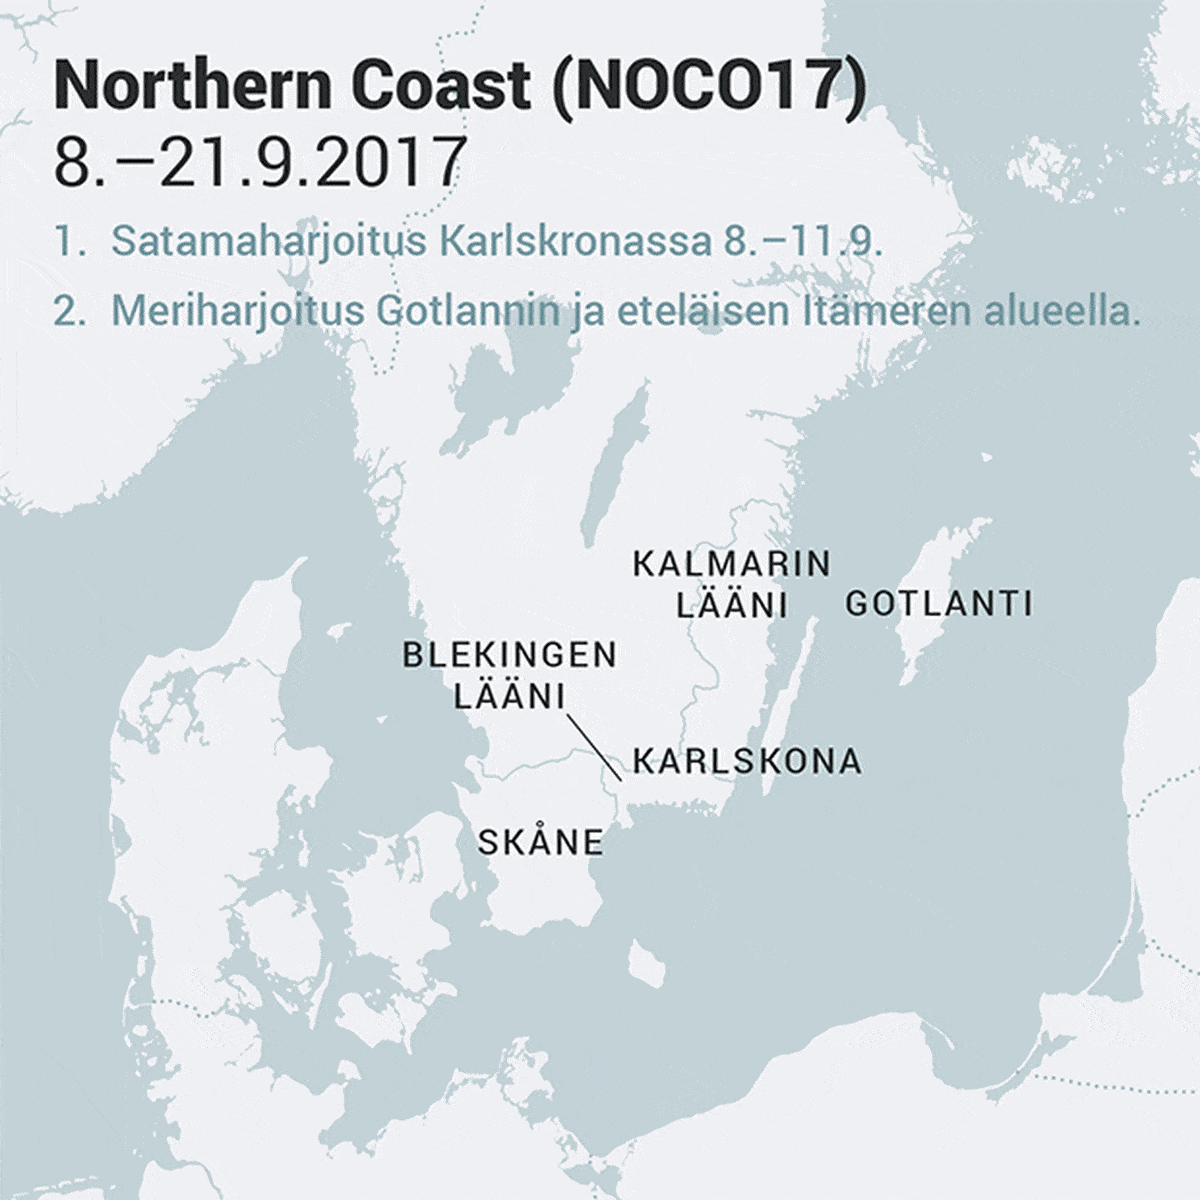 Northern Coast (NOCA17) -sotaharjoitus Itämerellä 8.–21.9.2017. 